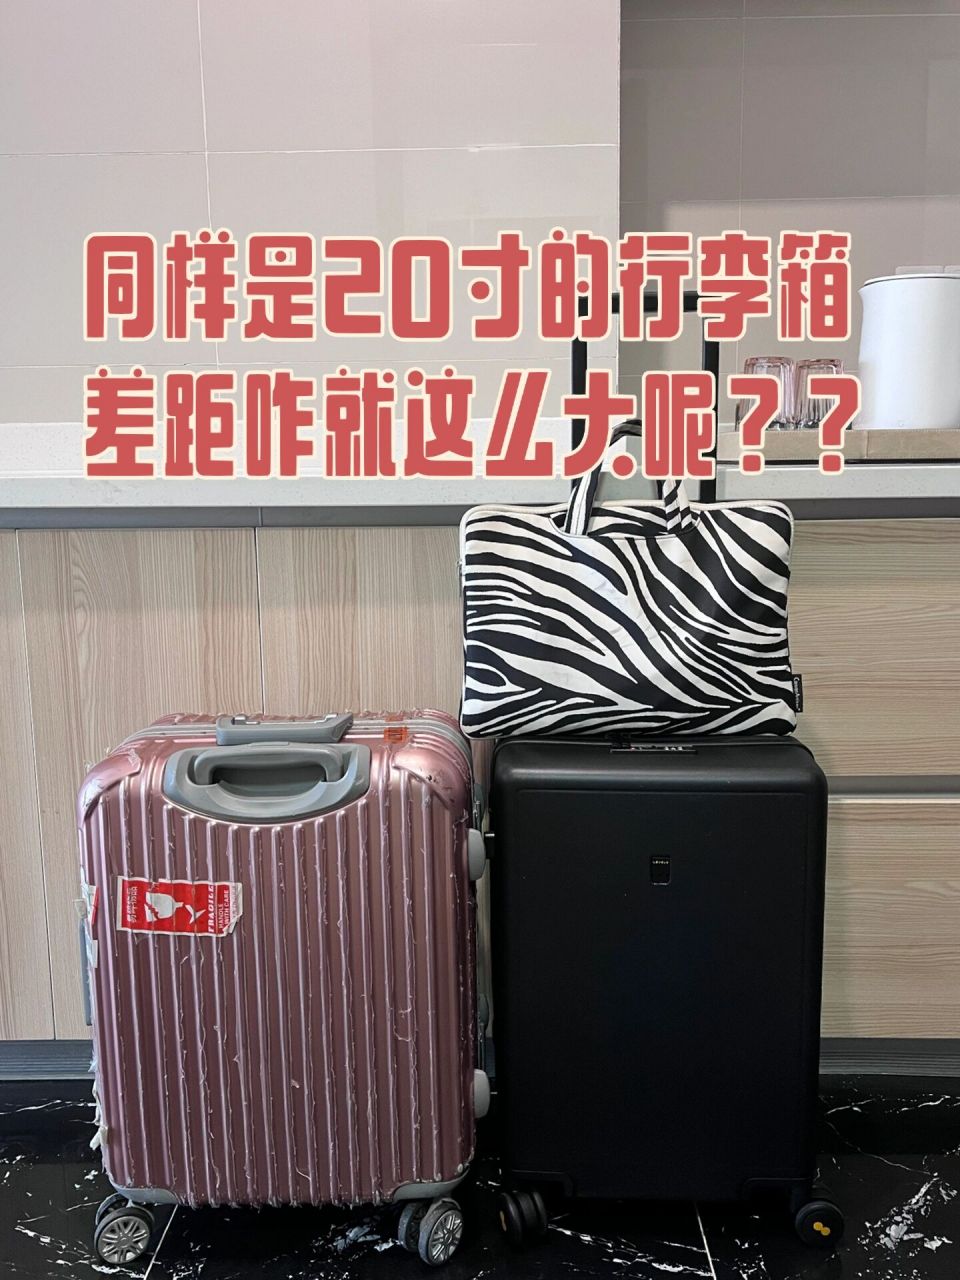 20寸的行李箱究竟是多大?